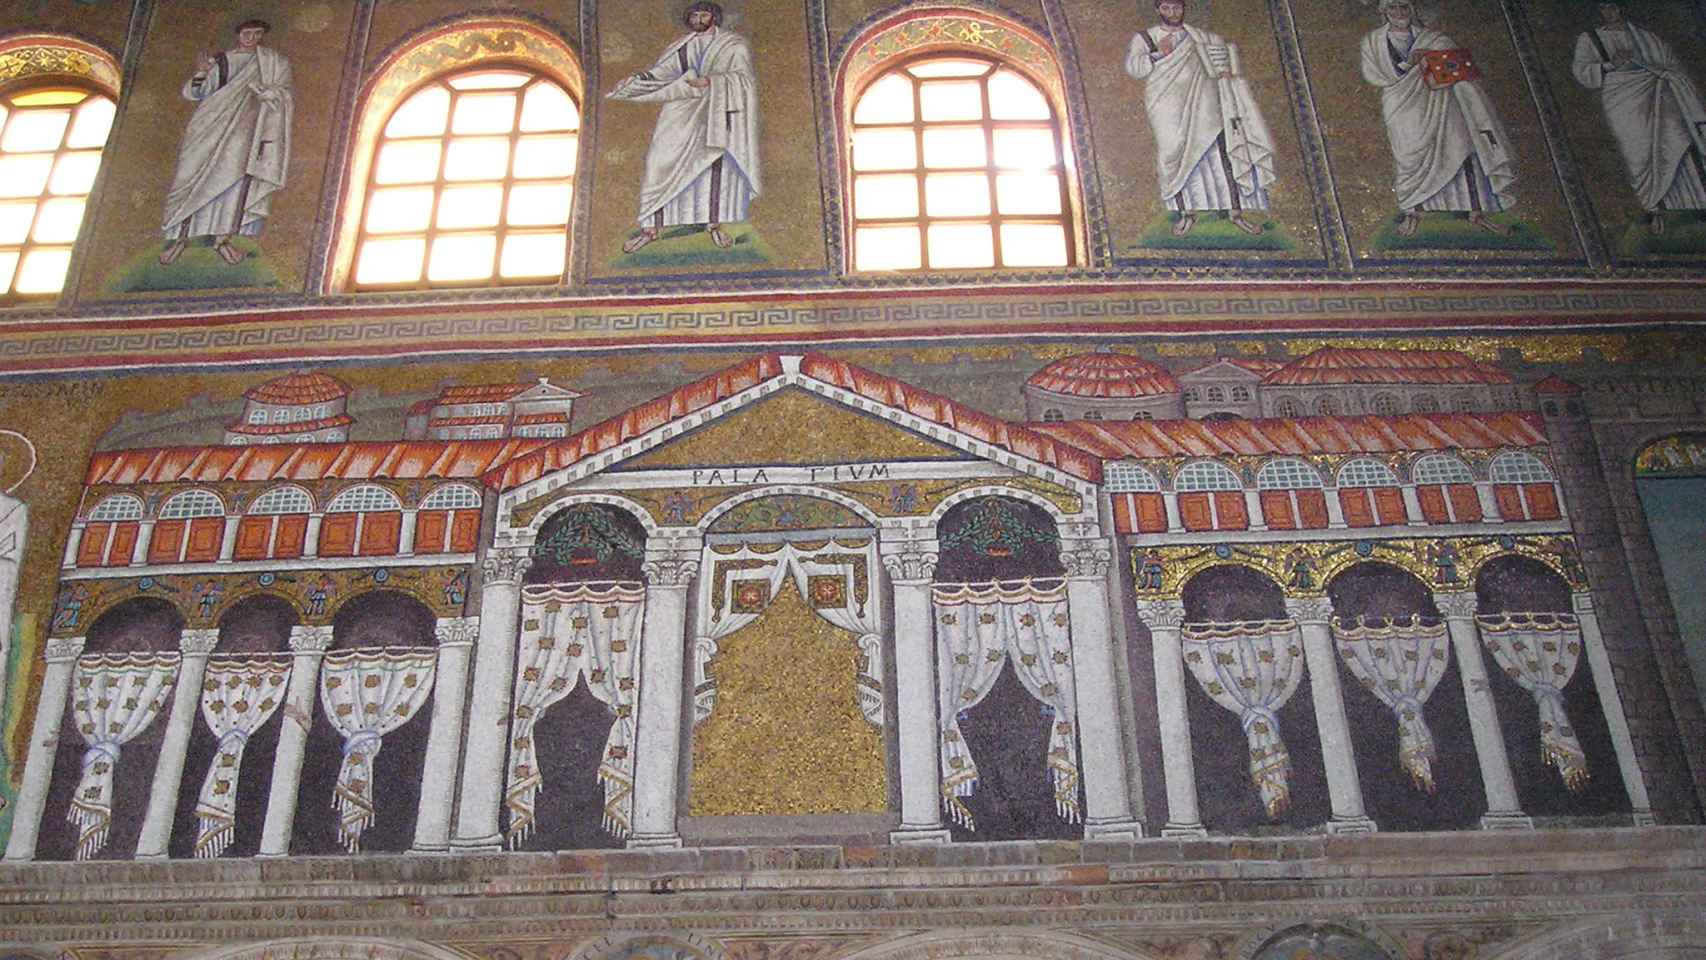 El mosaico del 'palatium' con la ciudad amurallada d Rávena, detrás, en el extremo oeste de San Apolinar el Nuevo. Originalmente, Teodorico aparecía entronizado bajo el arco central.